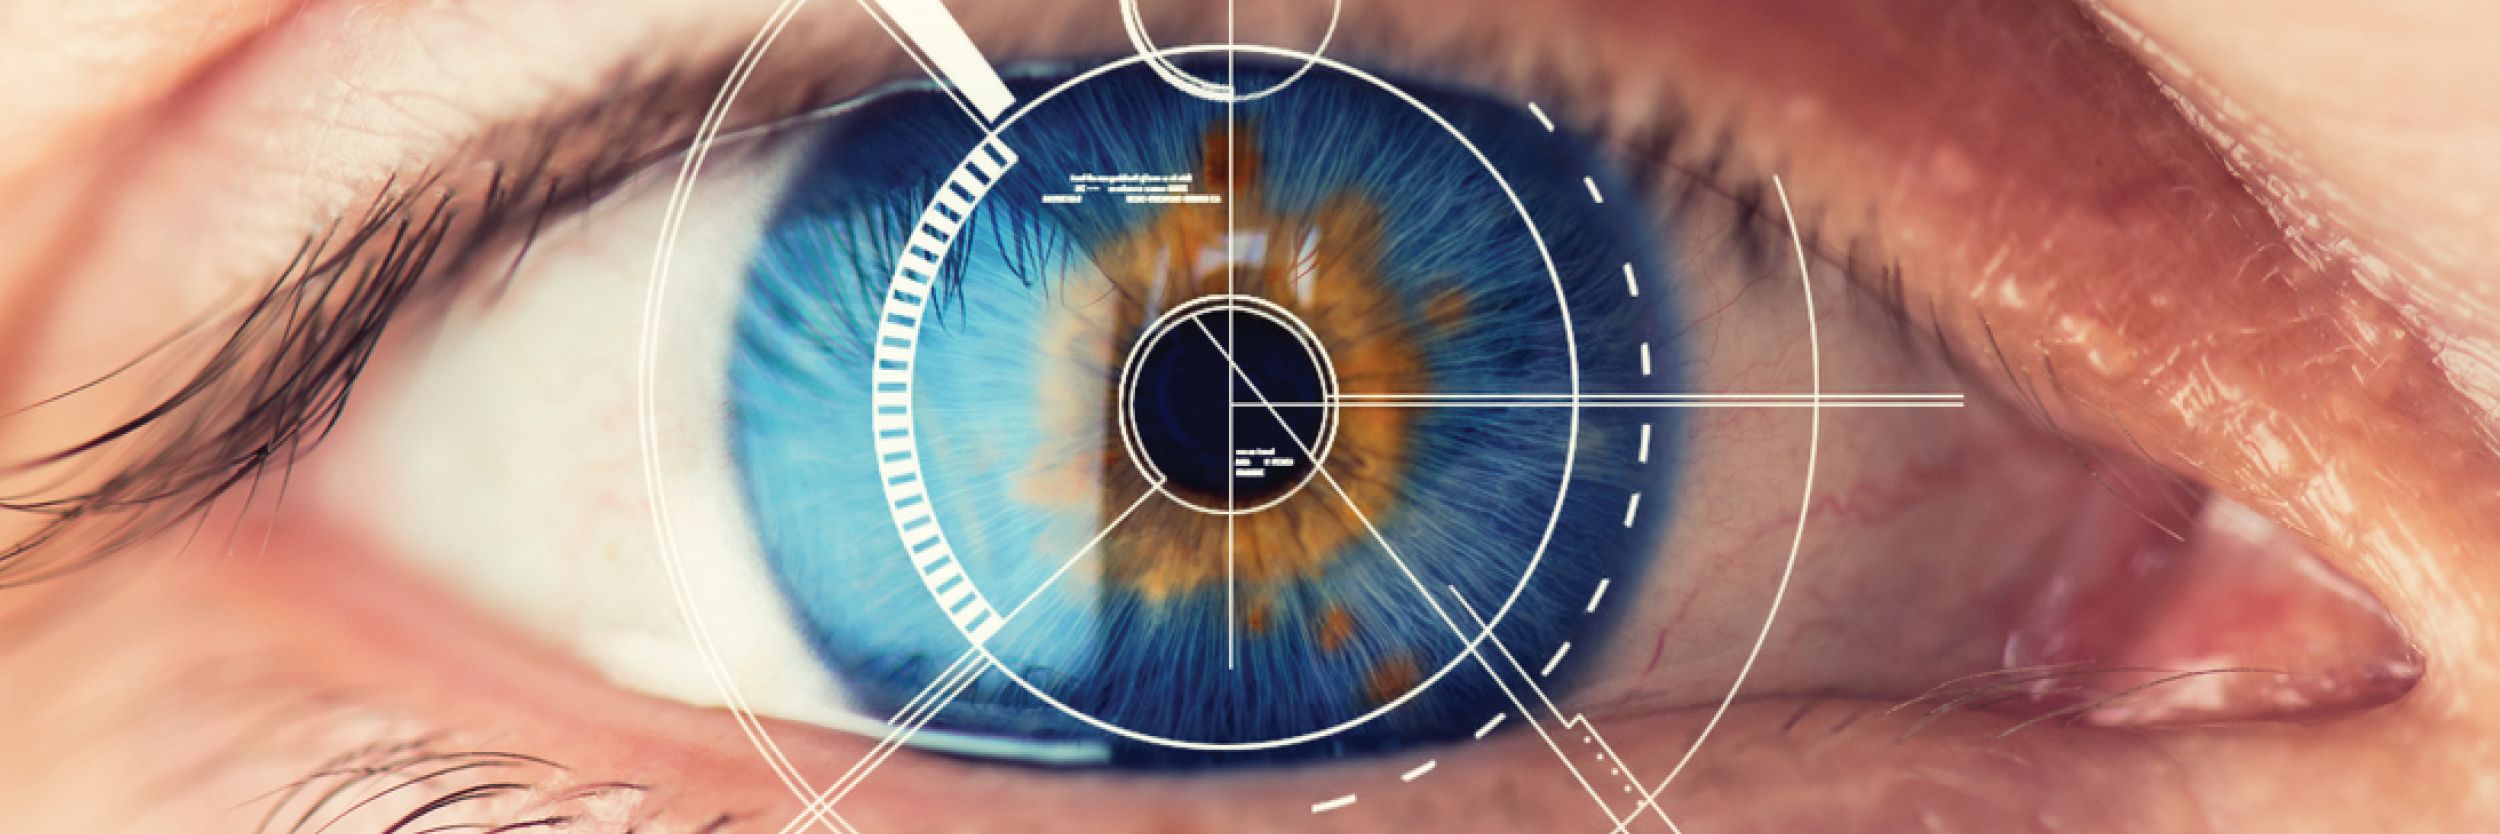 Зрение после беременности. Сетчатка глаза биометрия. Сканер по радужной оболочке глаза. Коррекция зрения лазером.